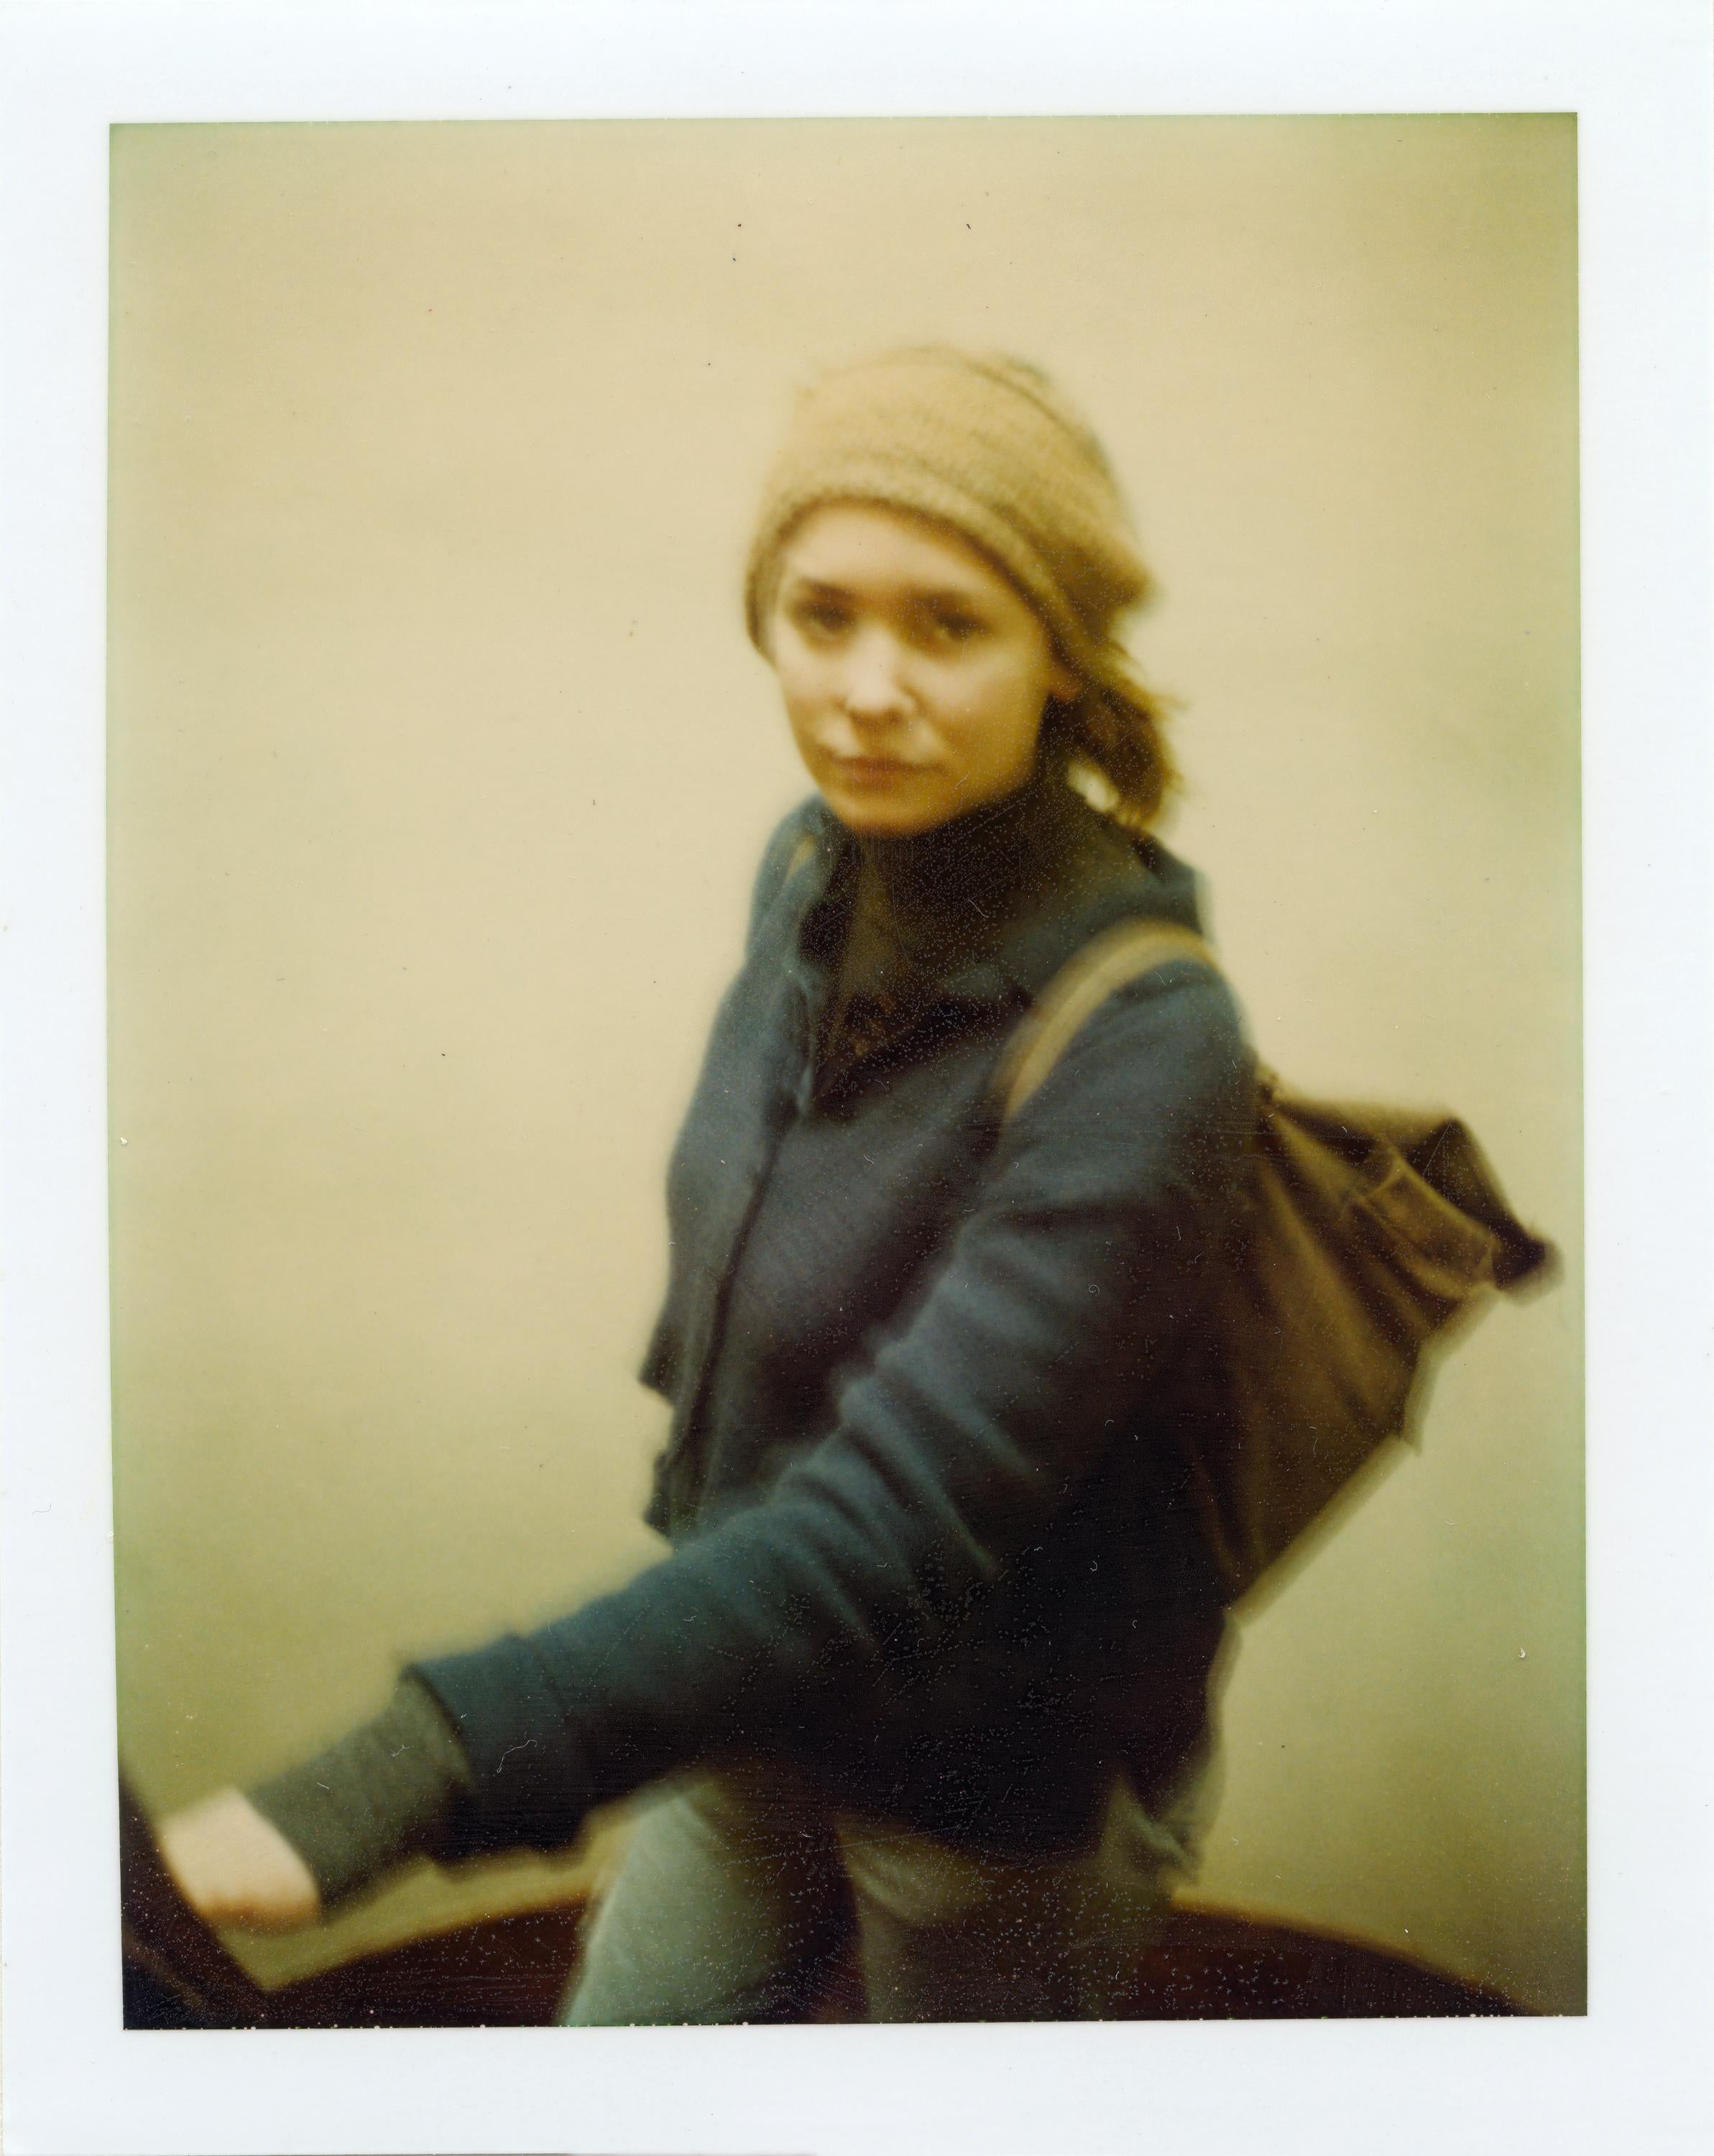 Zoë (Paris), analog, Contemporary, Women, Portrait